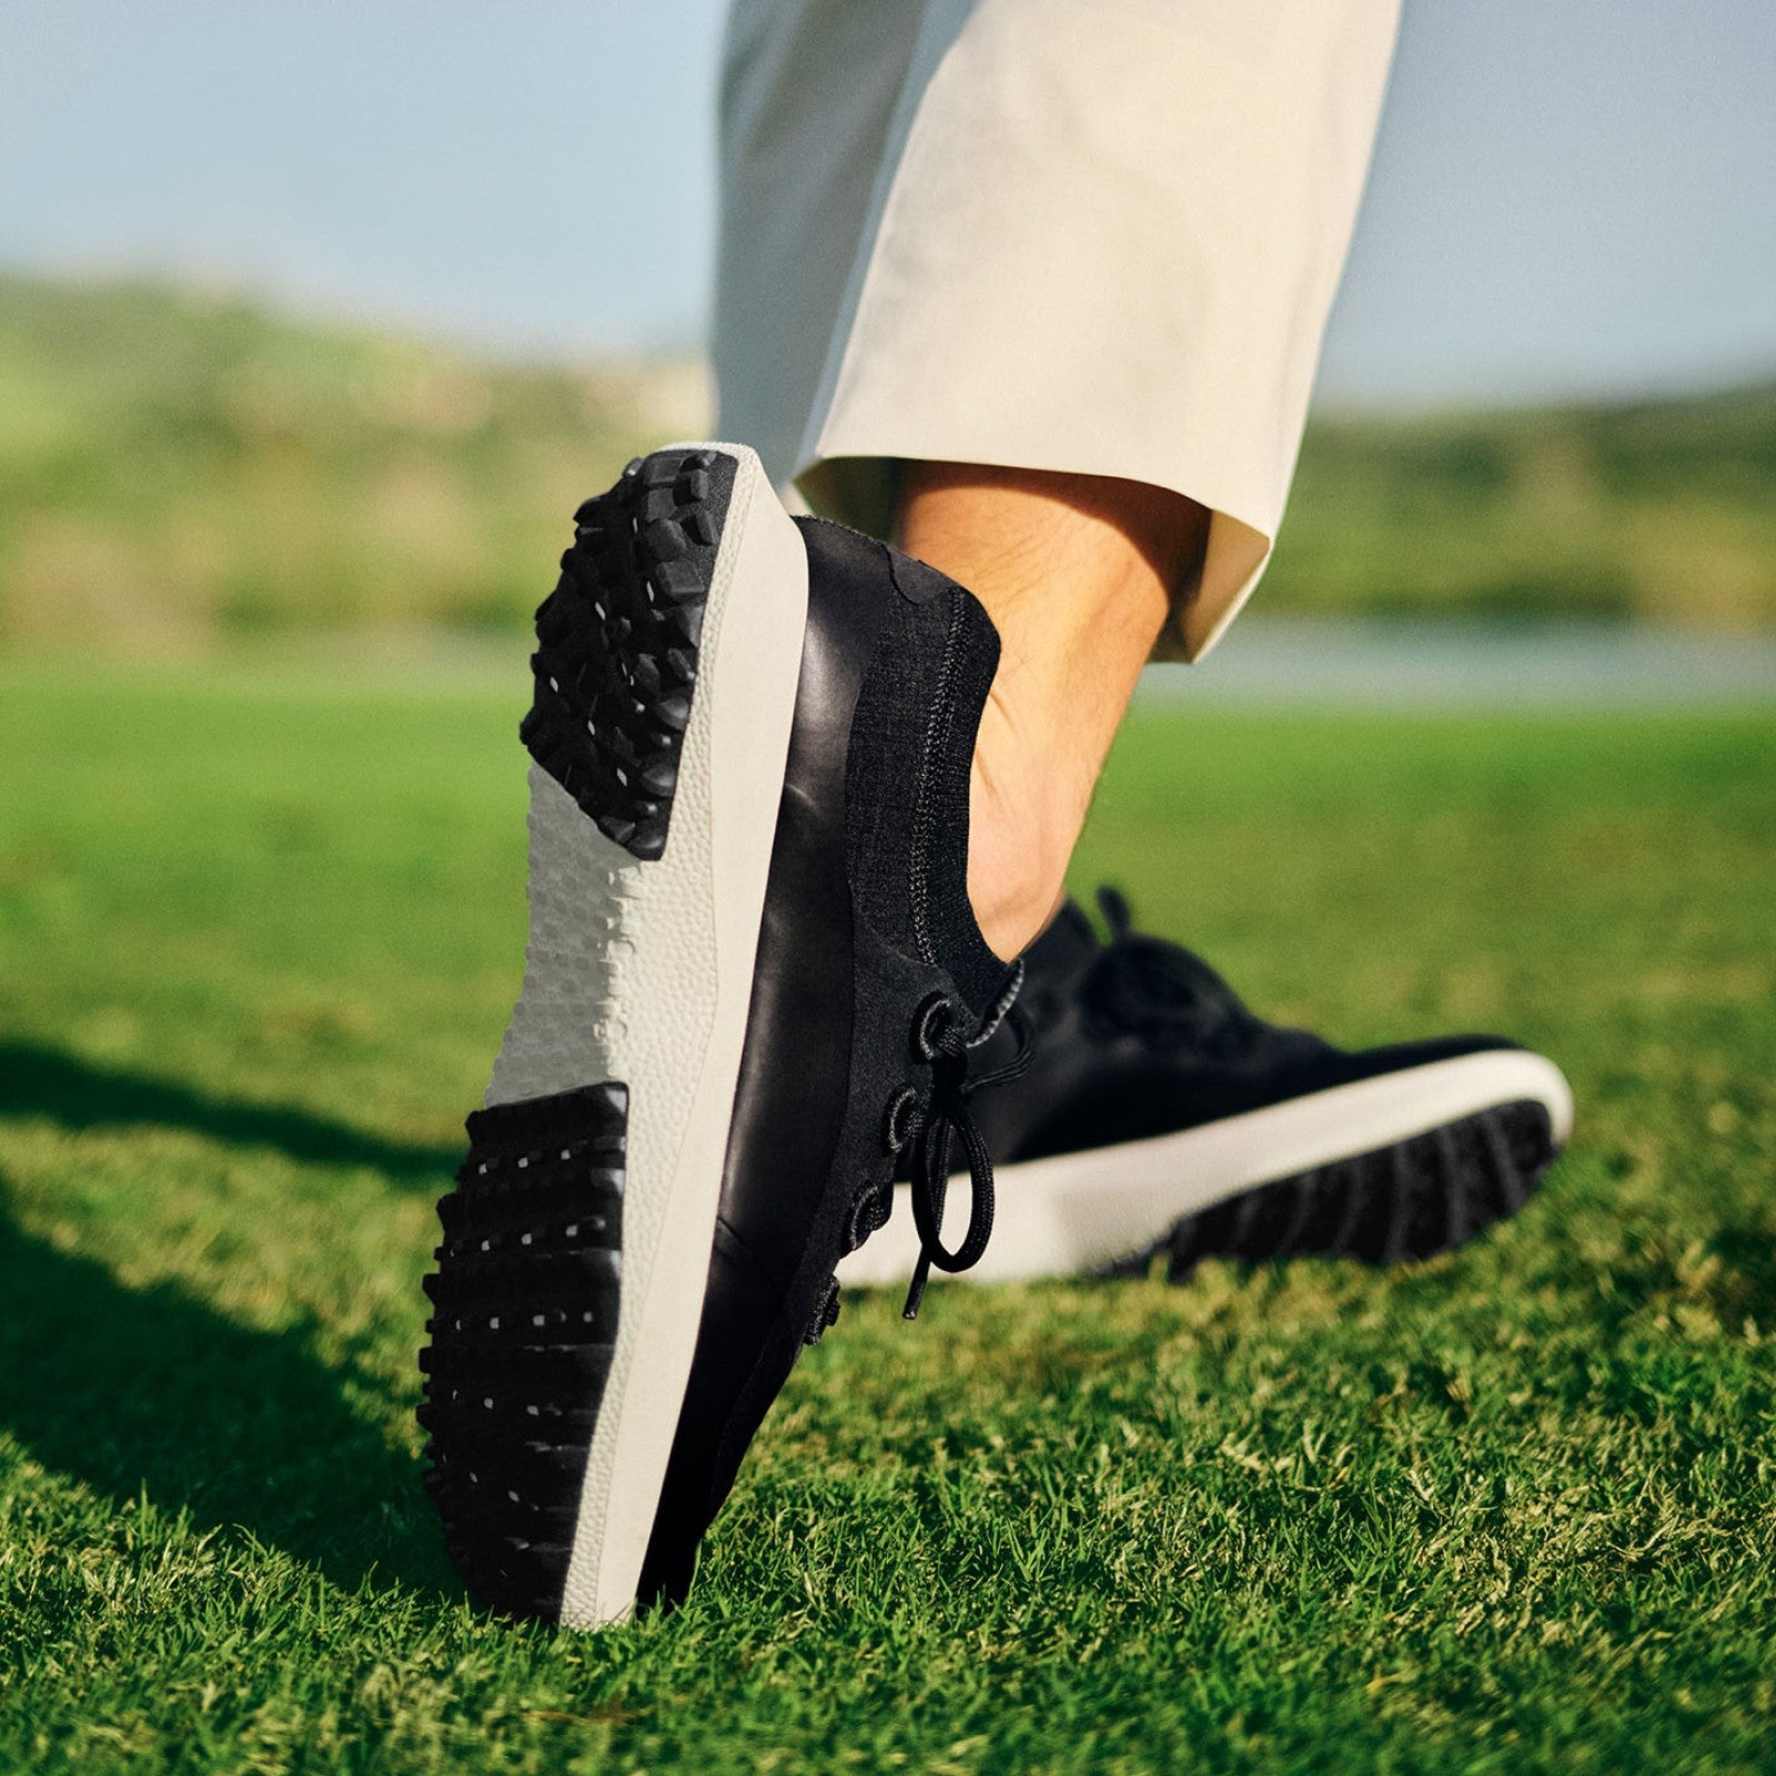 Men's Golf Dashers With Full-Swing Stability | Allbirds